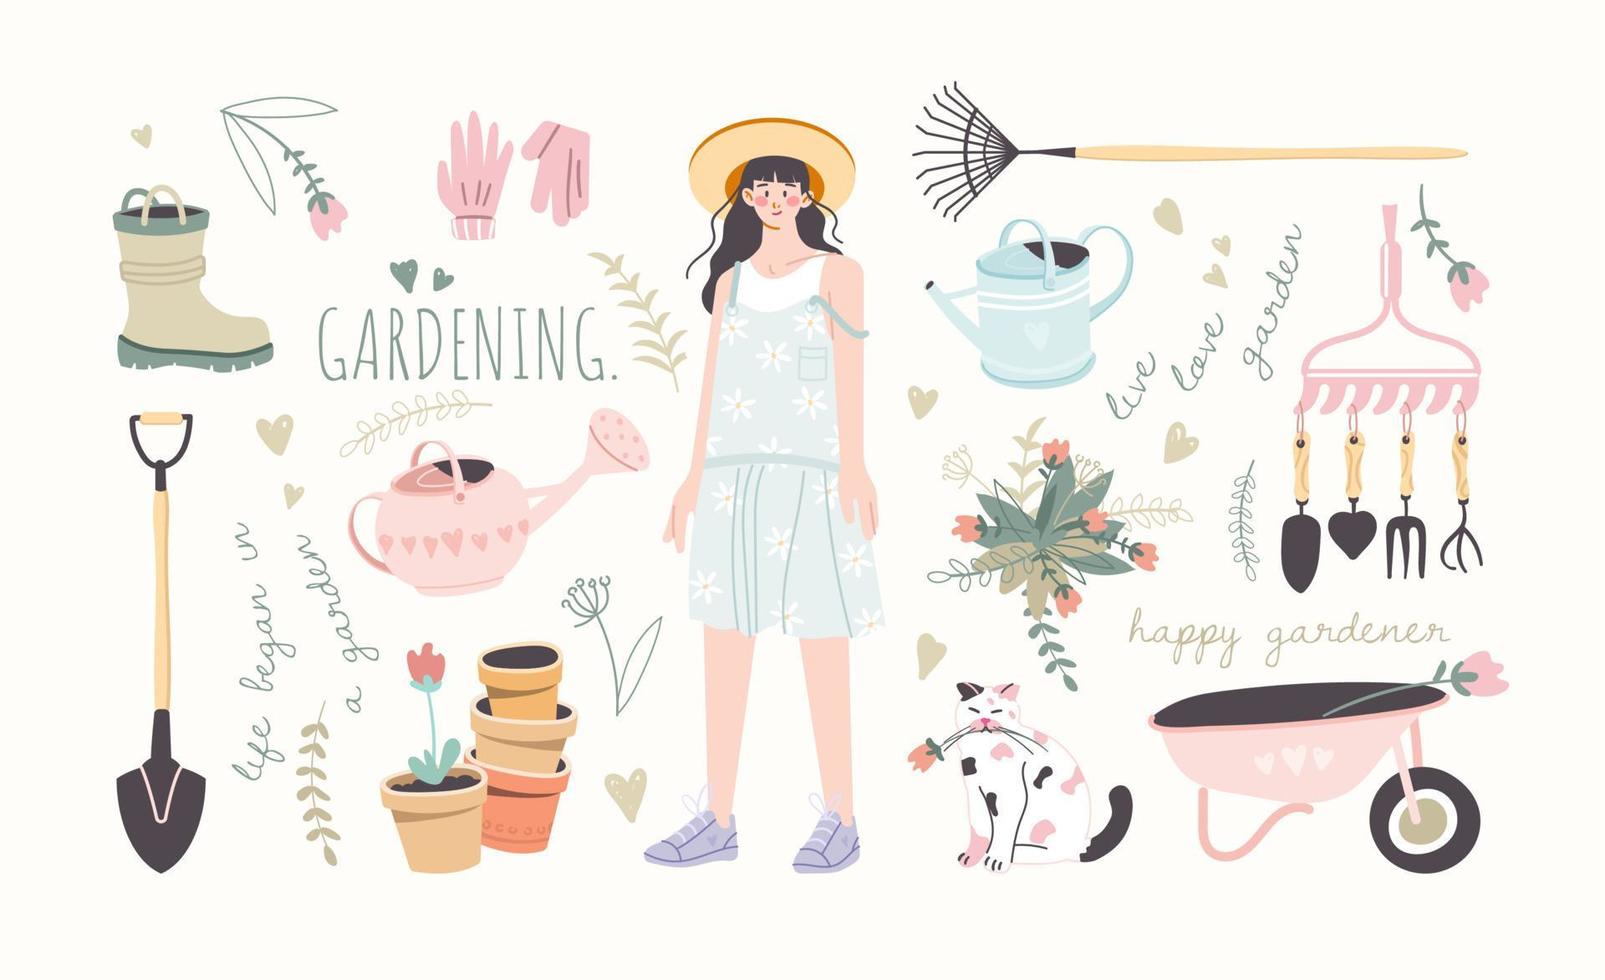 söt trädgård set. illustrationer av trädgårdsredskap för att odla och ta hand om växter. samling av söta grafiska element och trädgårdsmästare flicka. vektor i tecknad stil